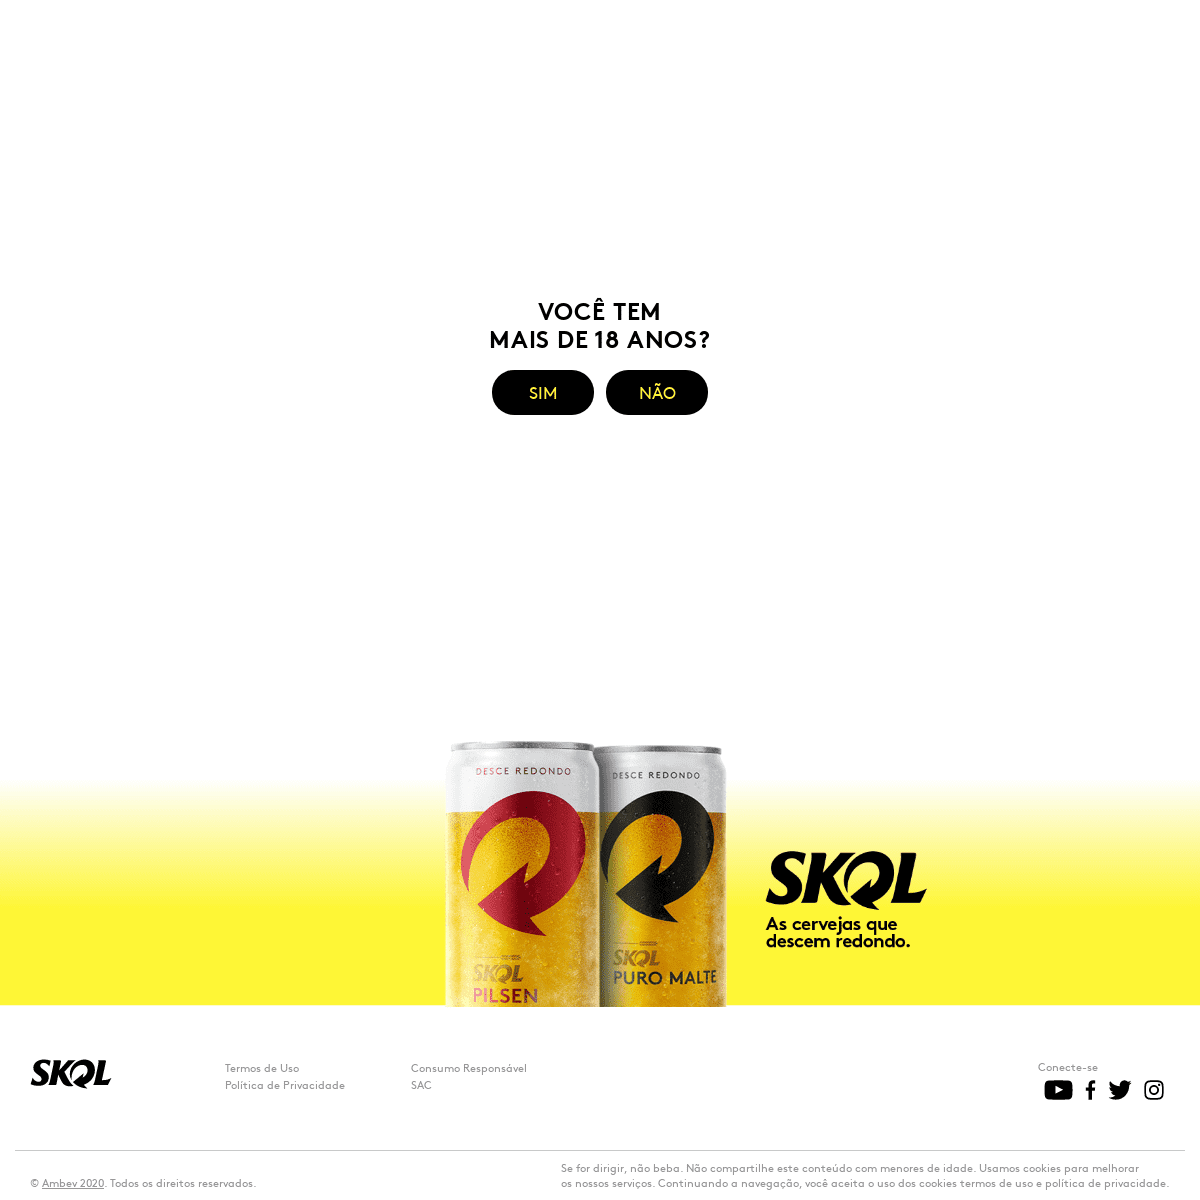 A complete backup of skol.com.br